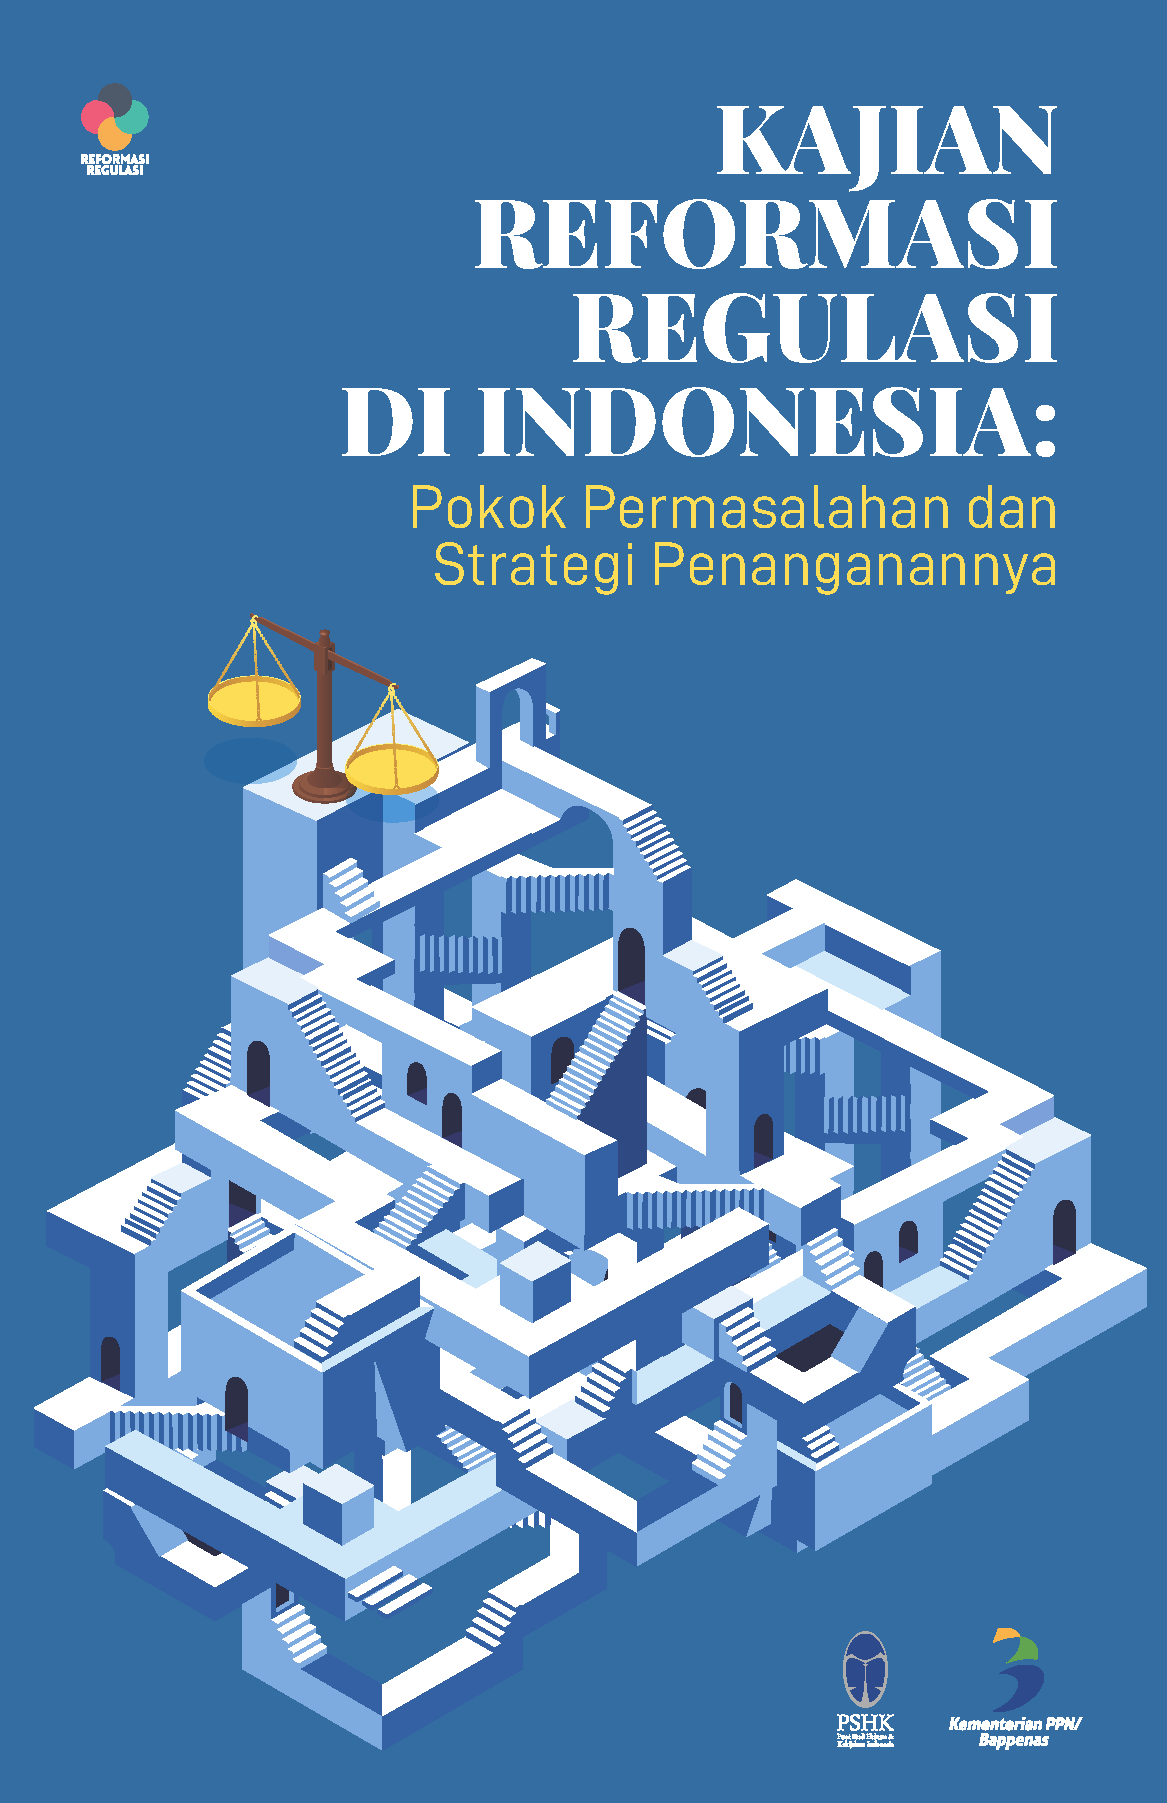 Kajian Reformasi Regulasi di Indonesia: Pokok Permasalahan dan Strategi Penanganannya